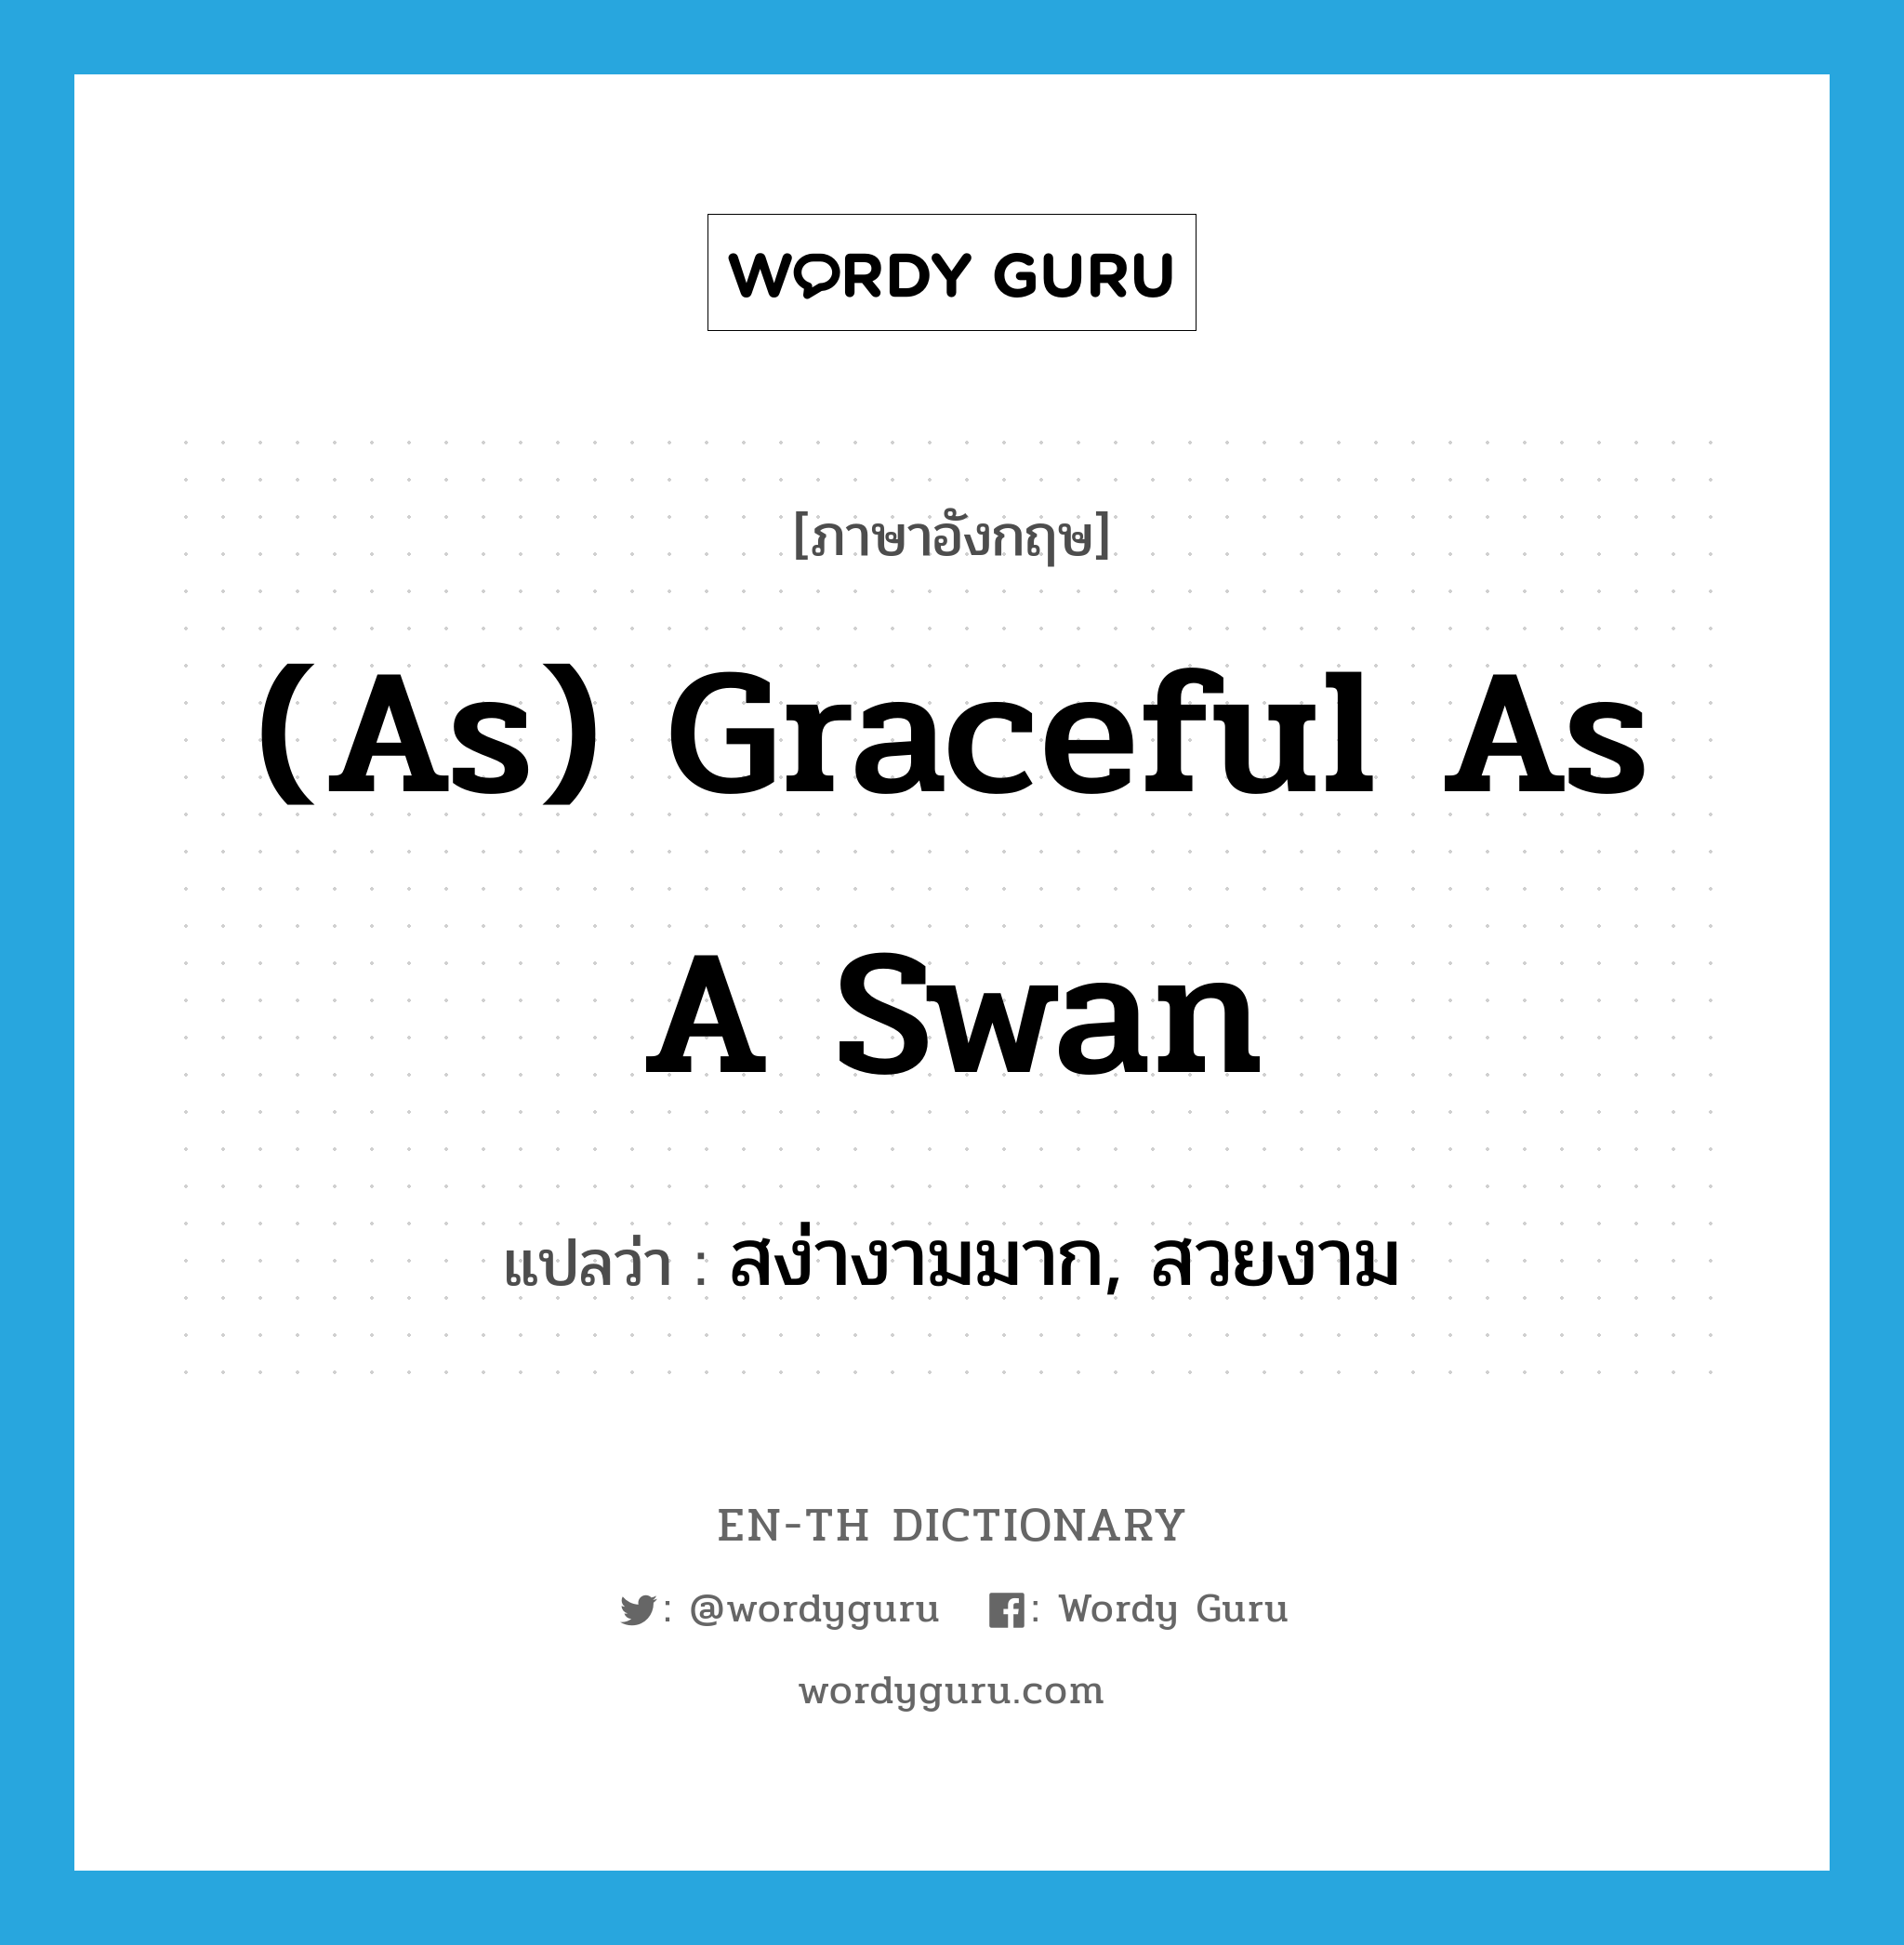 สง่างามมาก, สวยงาม ภาษาอังกฤษ?, คำศัพท์ภาษาอังกฤษ สง่างามมาก, สวยงาม แปลว่า (as) graceful as a swan ประเภท IDM หมวด IDM